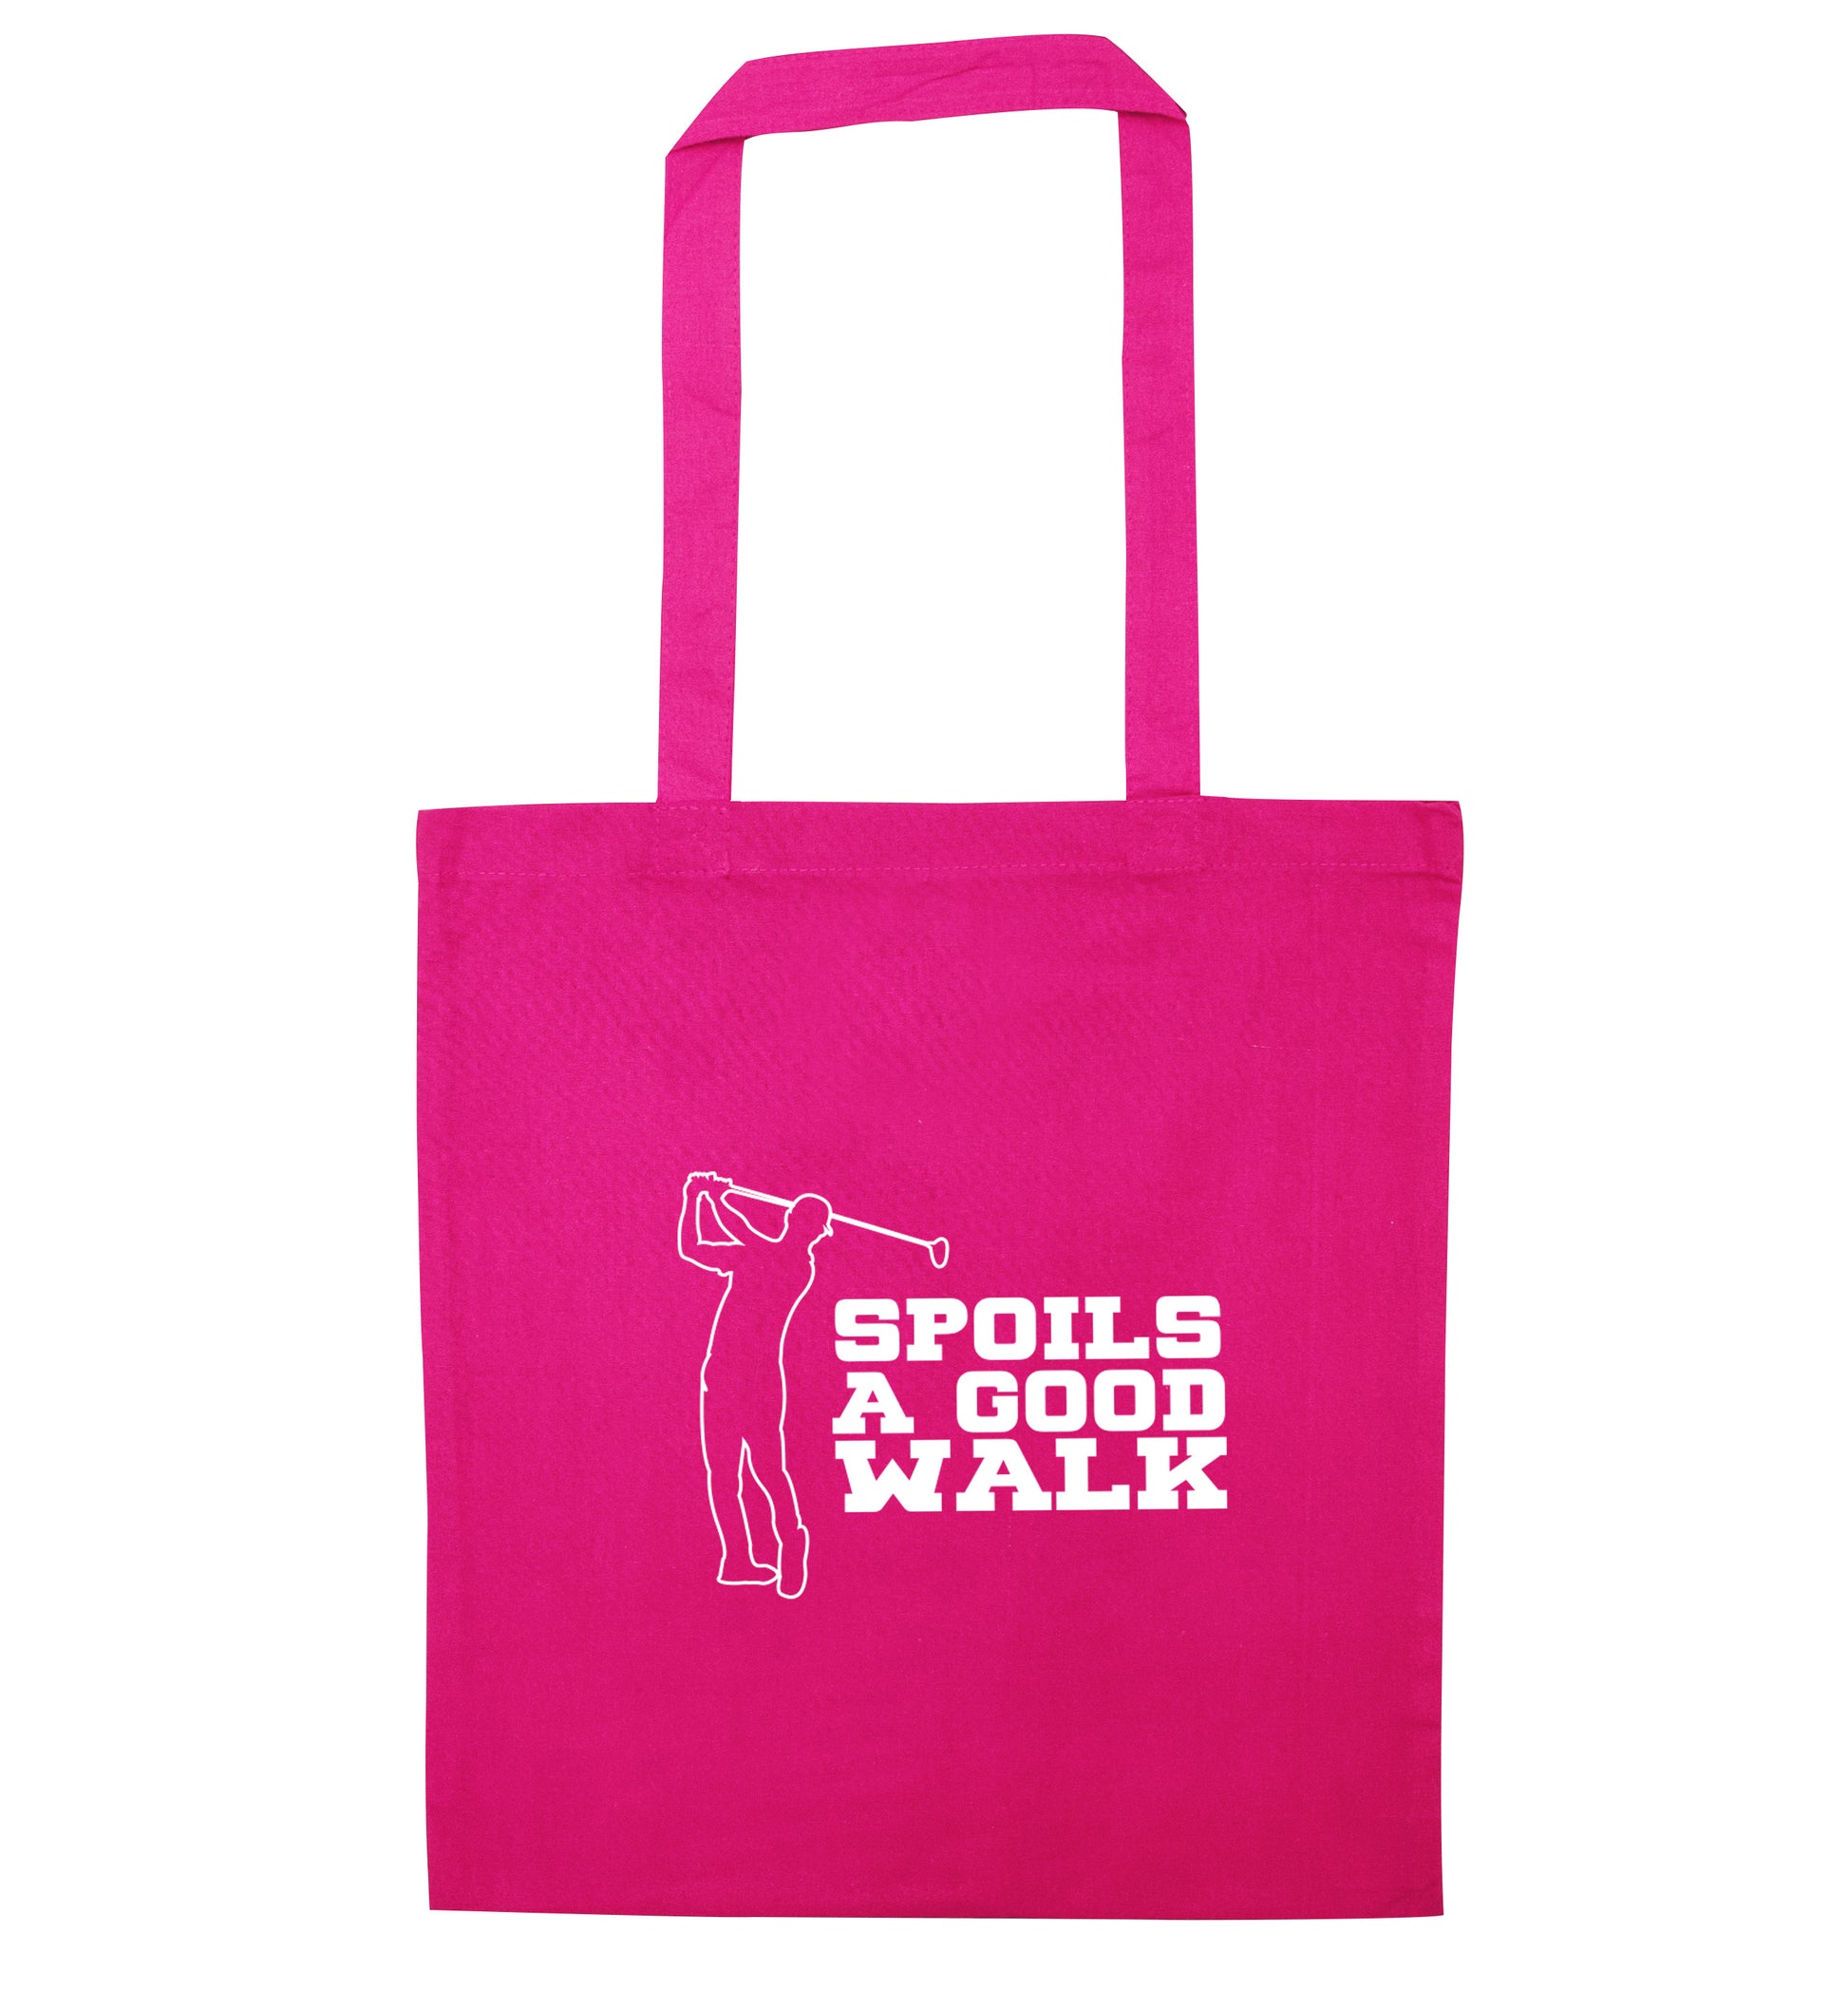 Golf spoils a good walk pink tote bag